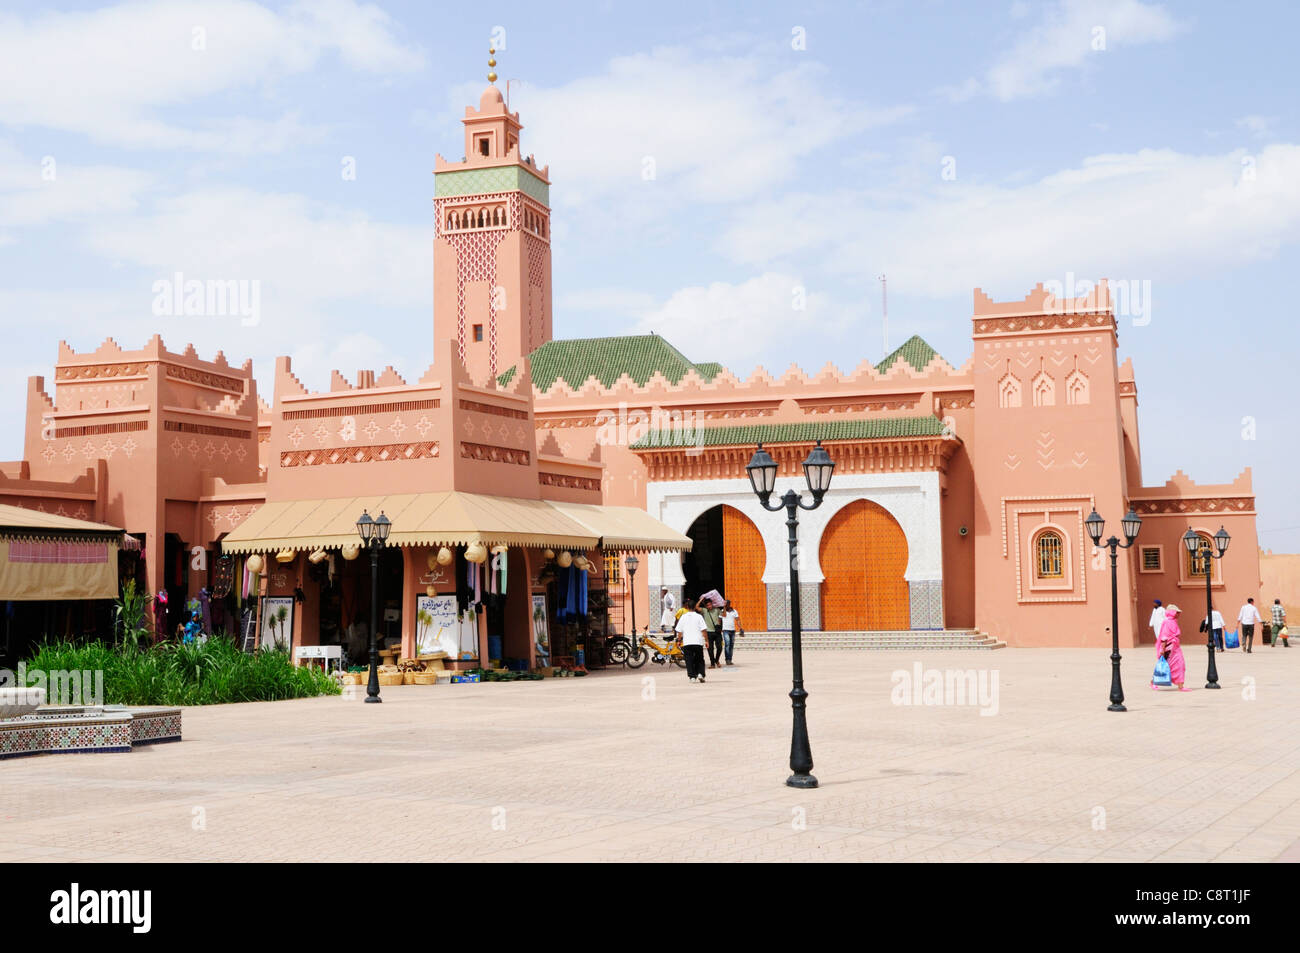 The Great Mosque, Zagora, Morocco Stock Photo